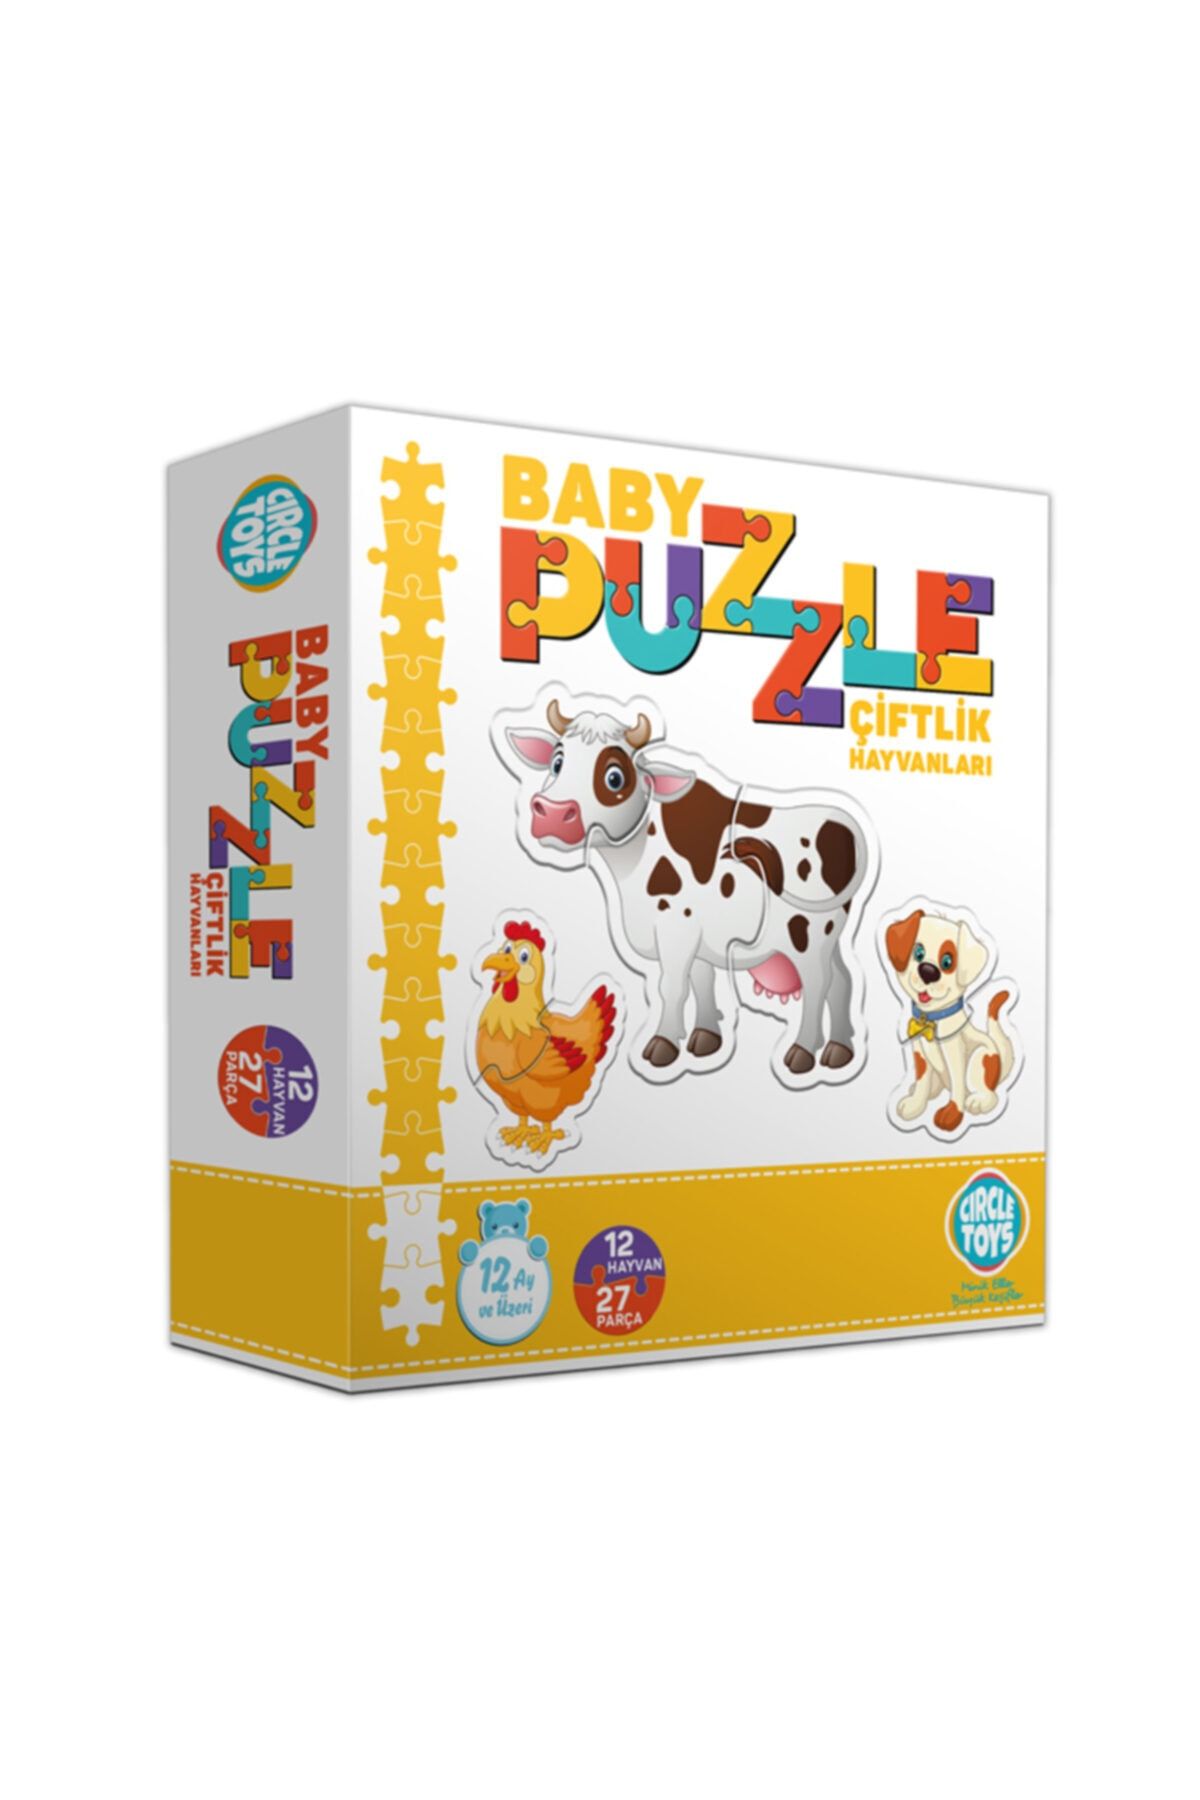 Circle Toys Özlem Toys Baby Puzzle Çiftlik Hayvanları Eğitici Görsel Algı Koordinasyon Becerisi 27 Parça